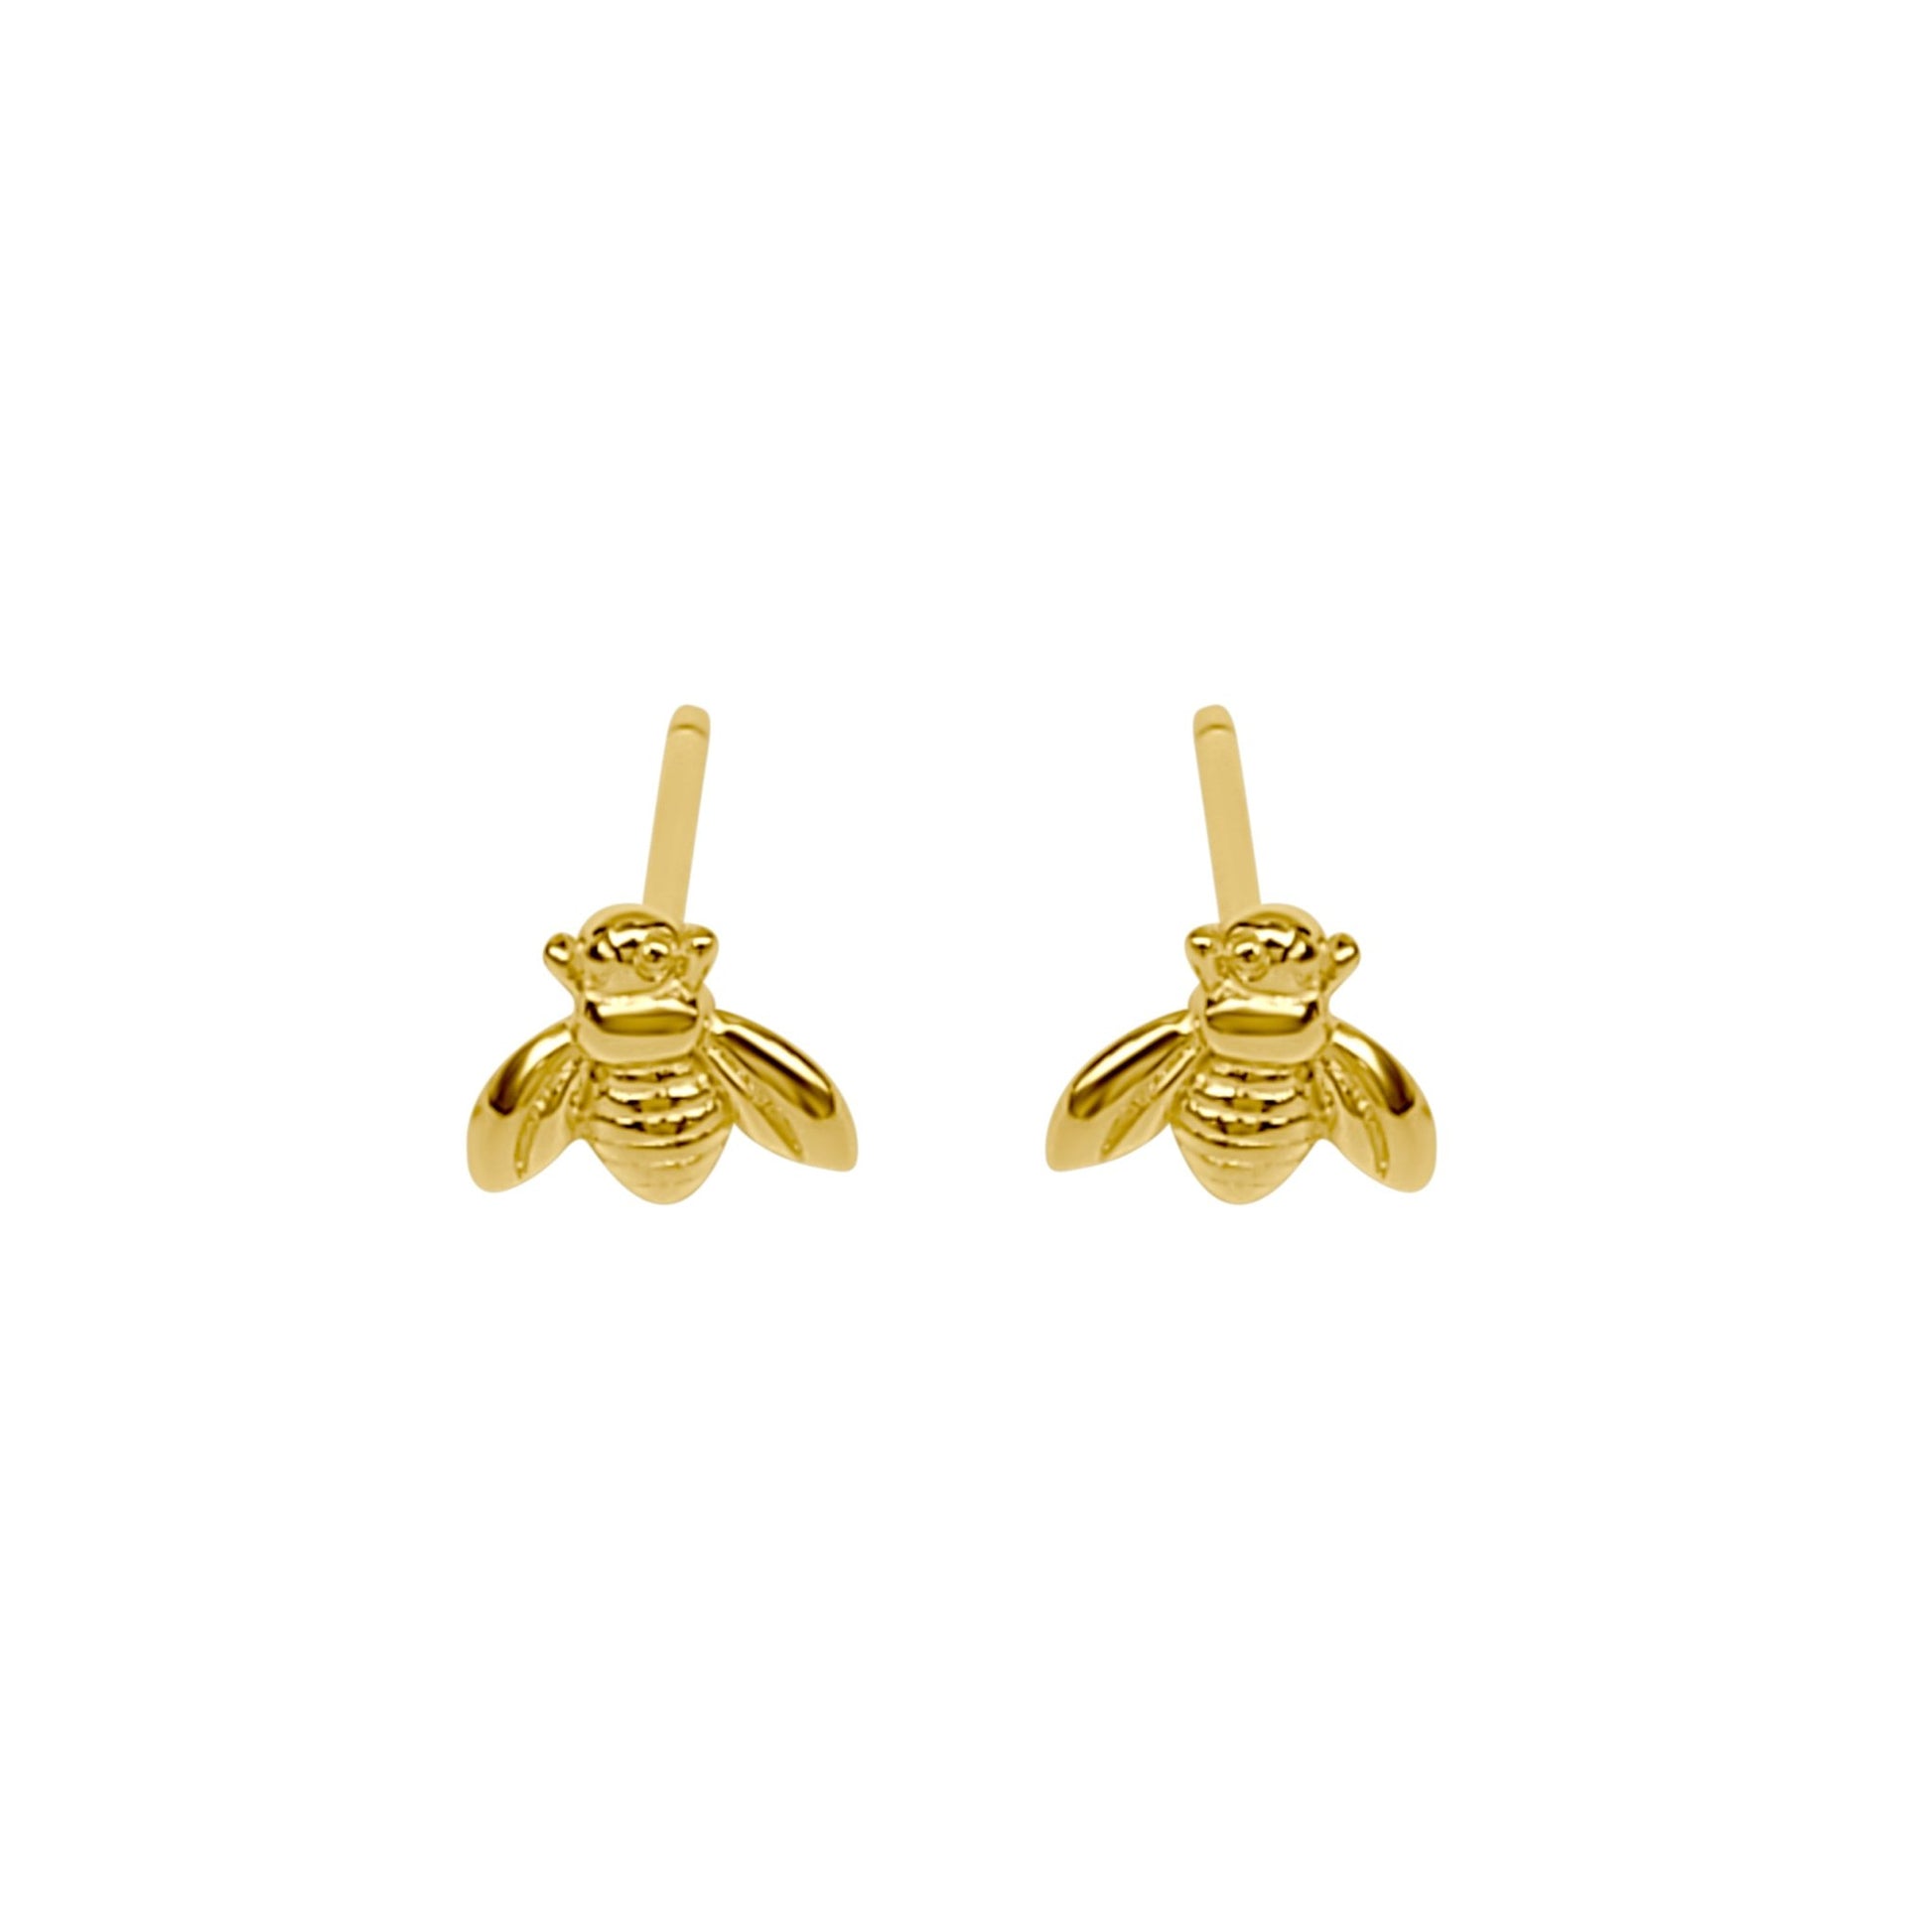 Erlea Bee stud earrings. Cute little gold bees on earring posts.